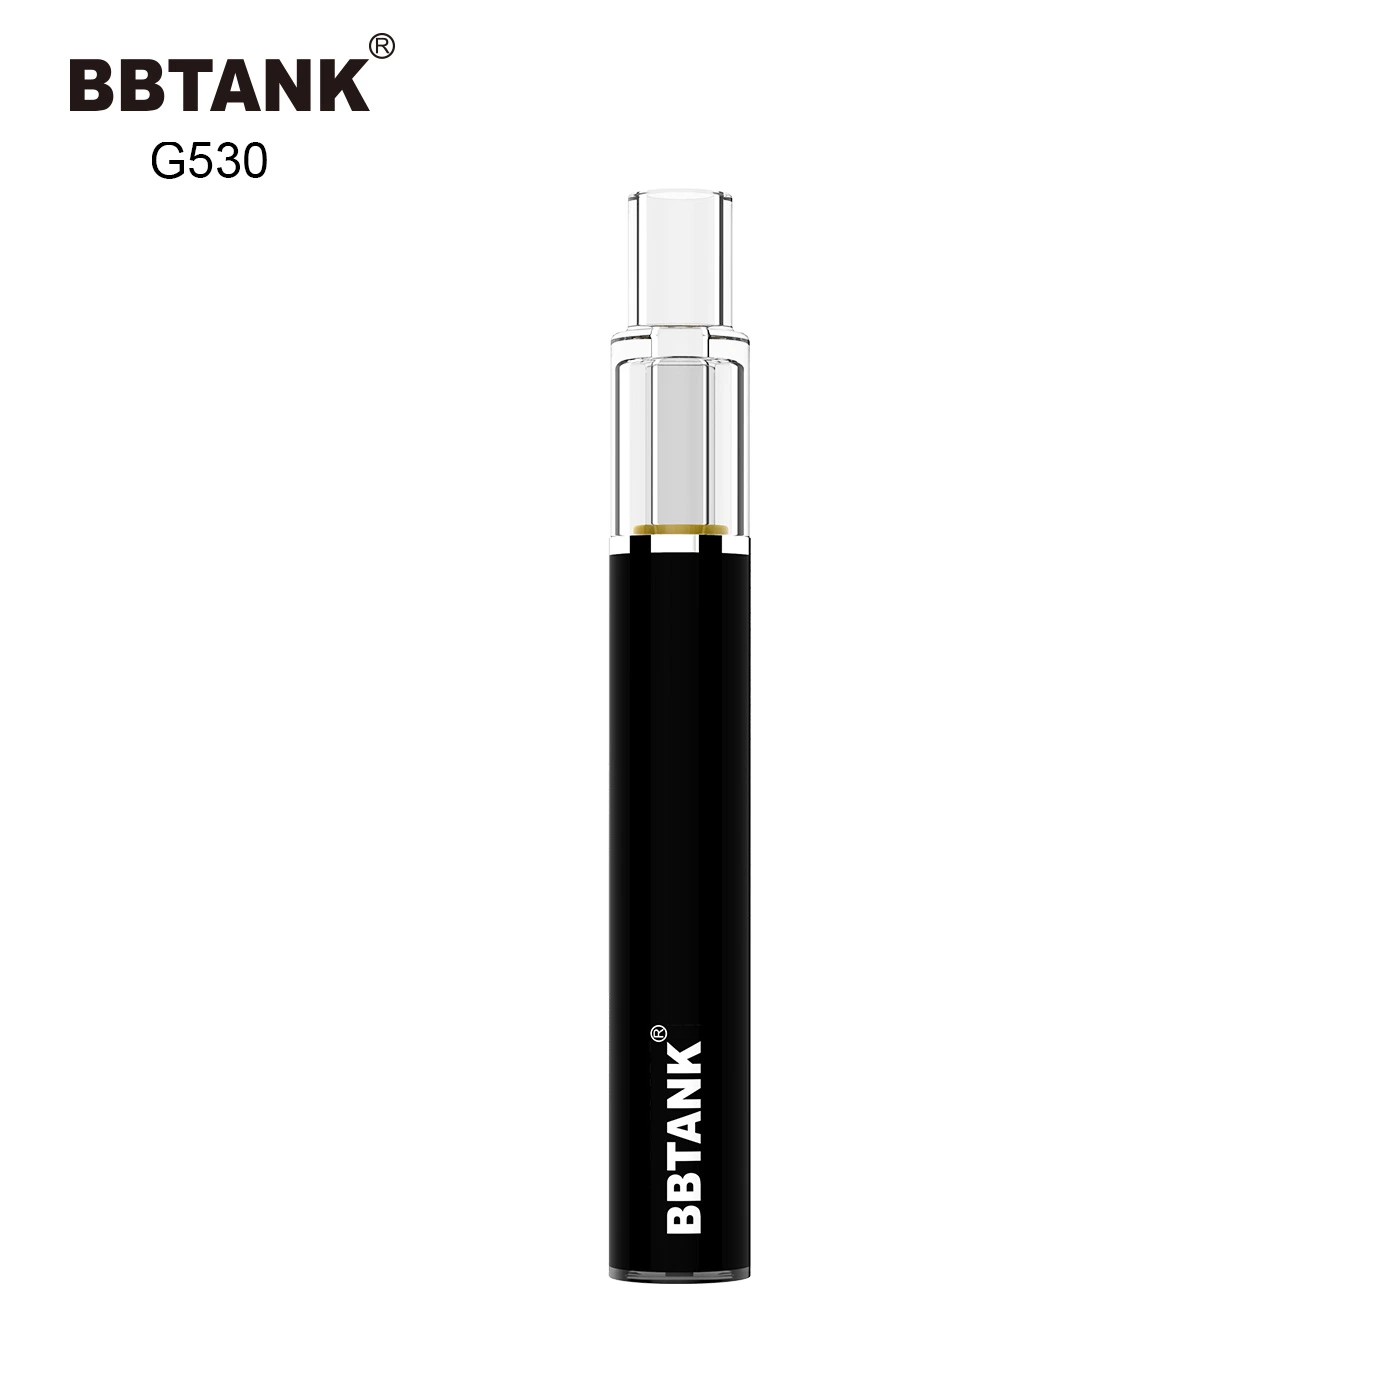 Quartzo completo estilo de Traço Cartucho Vape Bbtank óleo espesso recarregável Pen Cigarro eléctrico